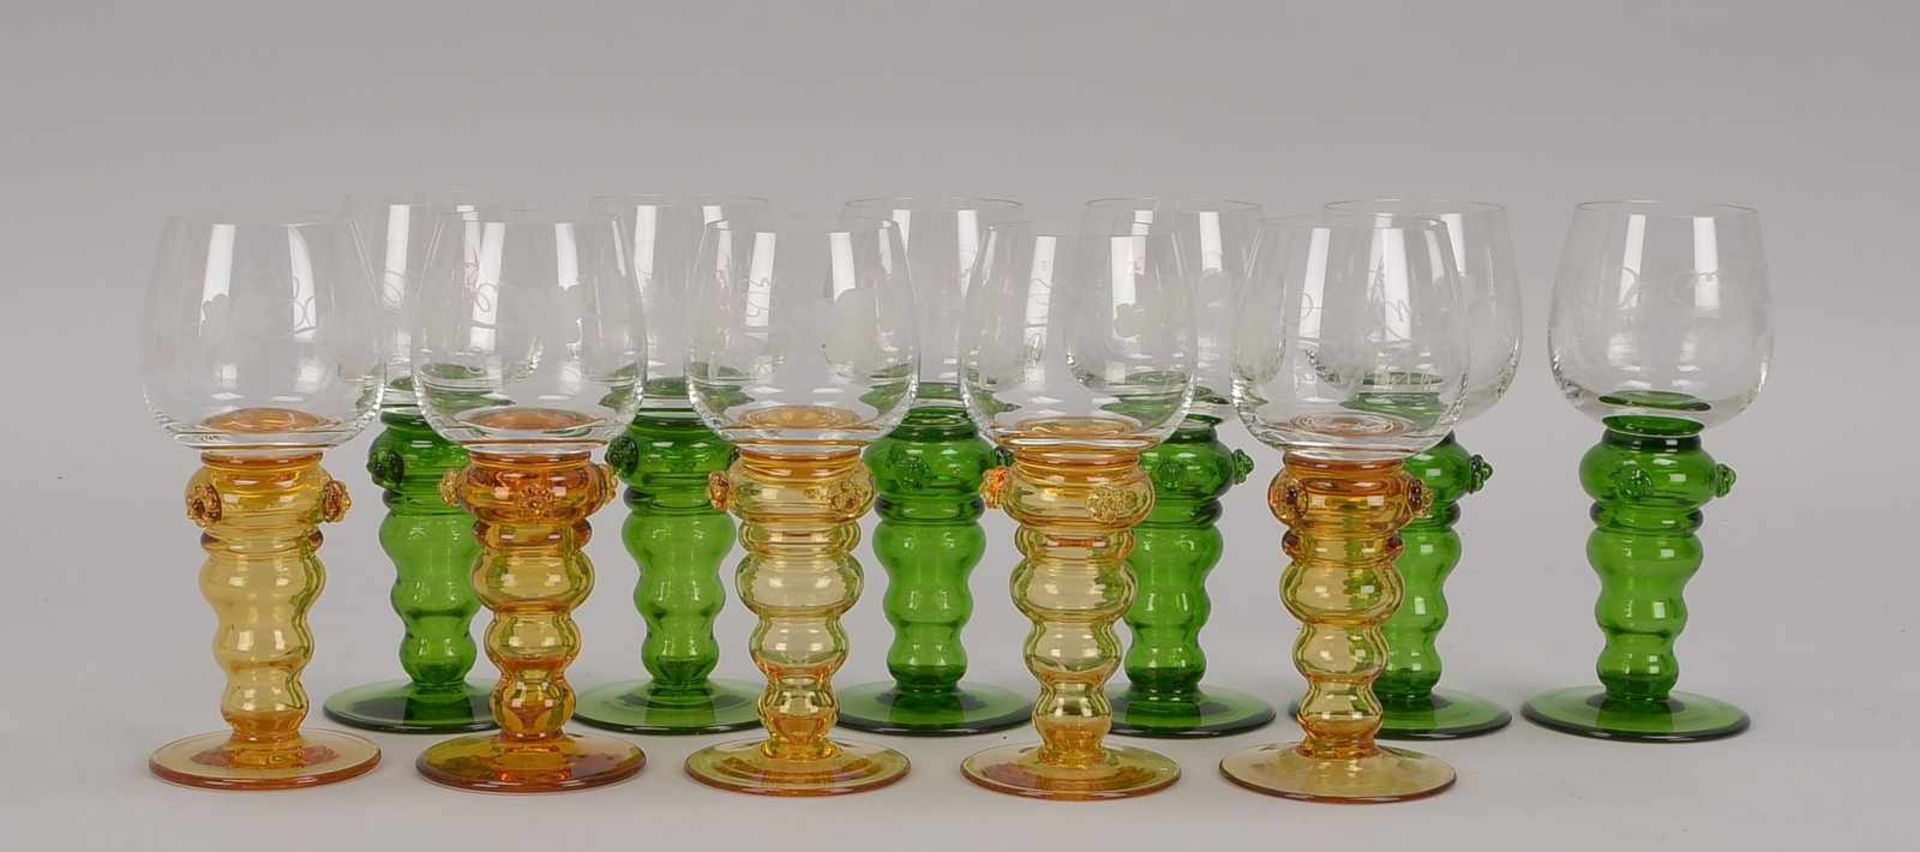 Theresienthal, Glasrömer-Konvolut, 2 Sätze: 1x Gläser mit grünem Fuß, 6 Stück; und 1x Gläser mit